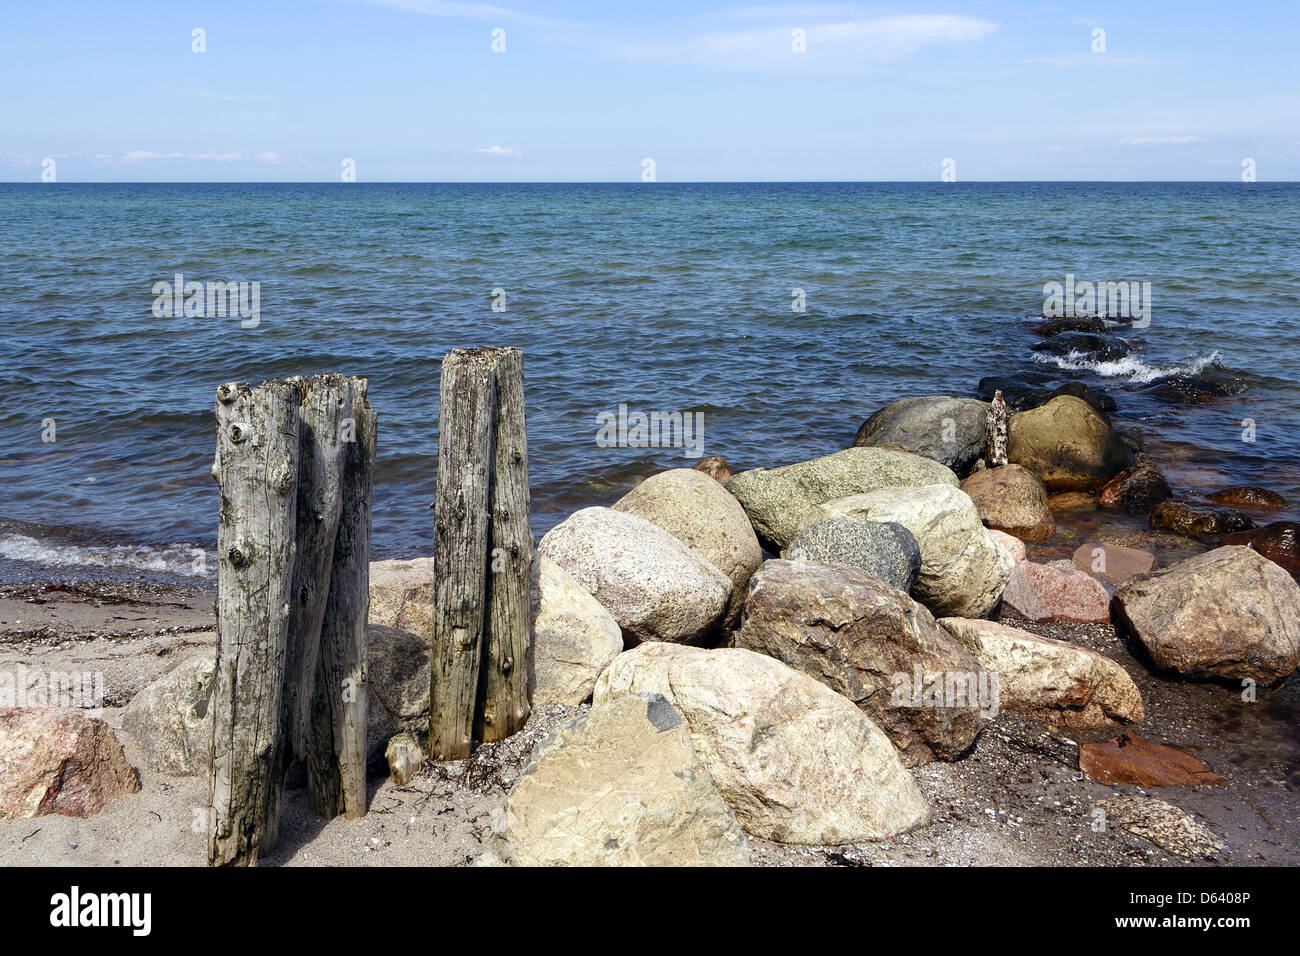 beach stones Stock Photo